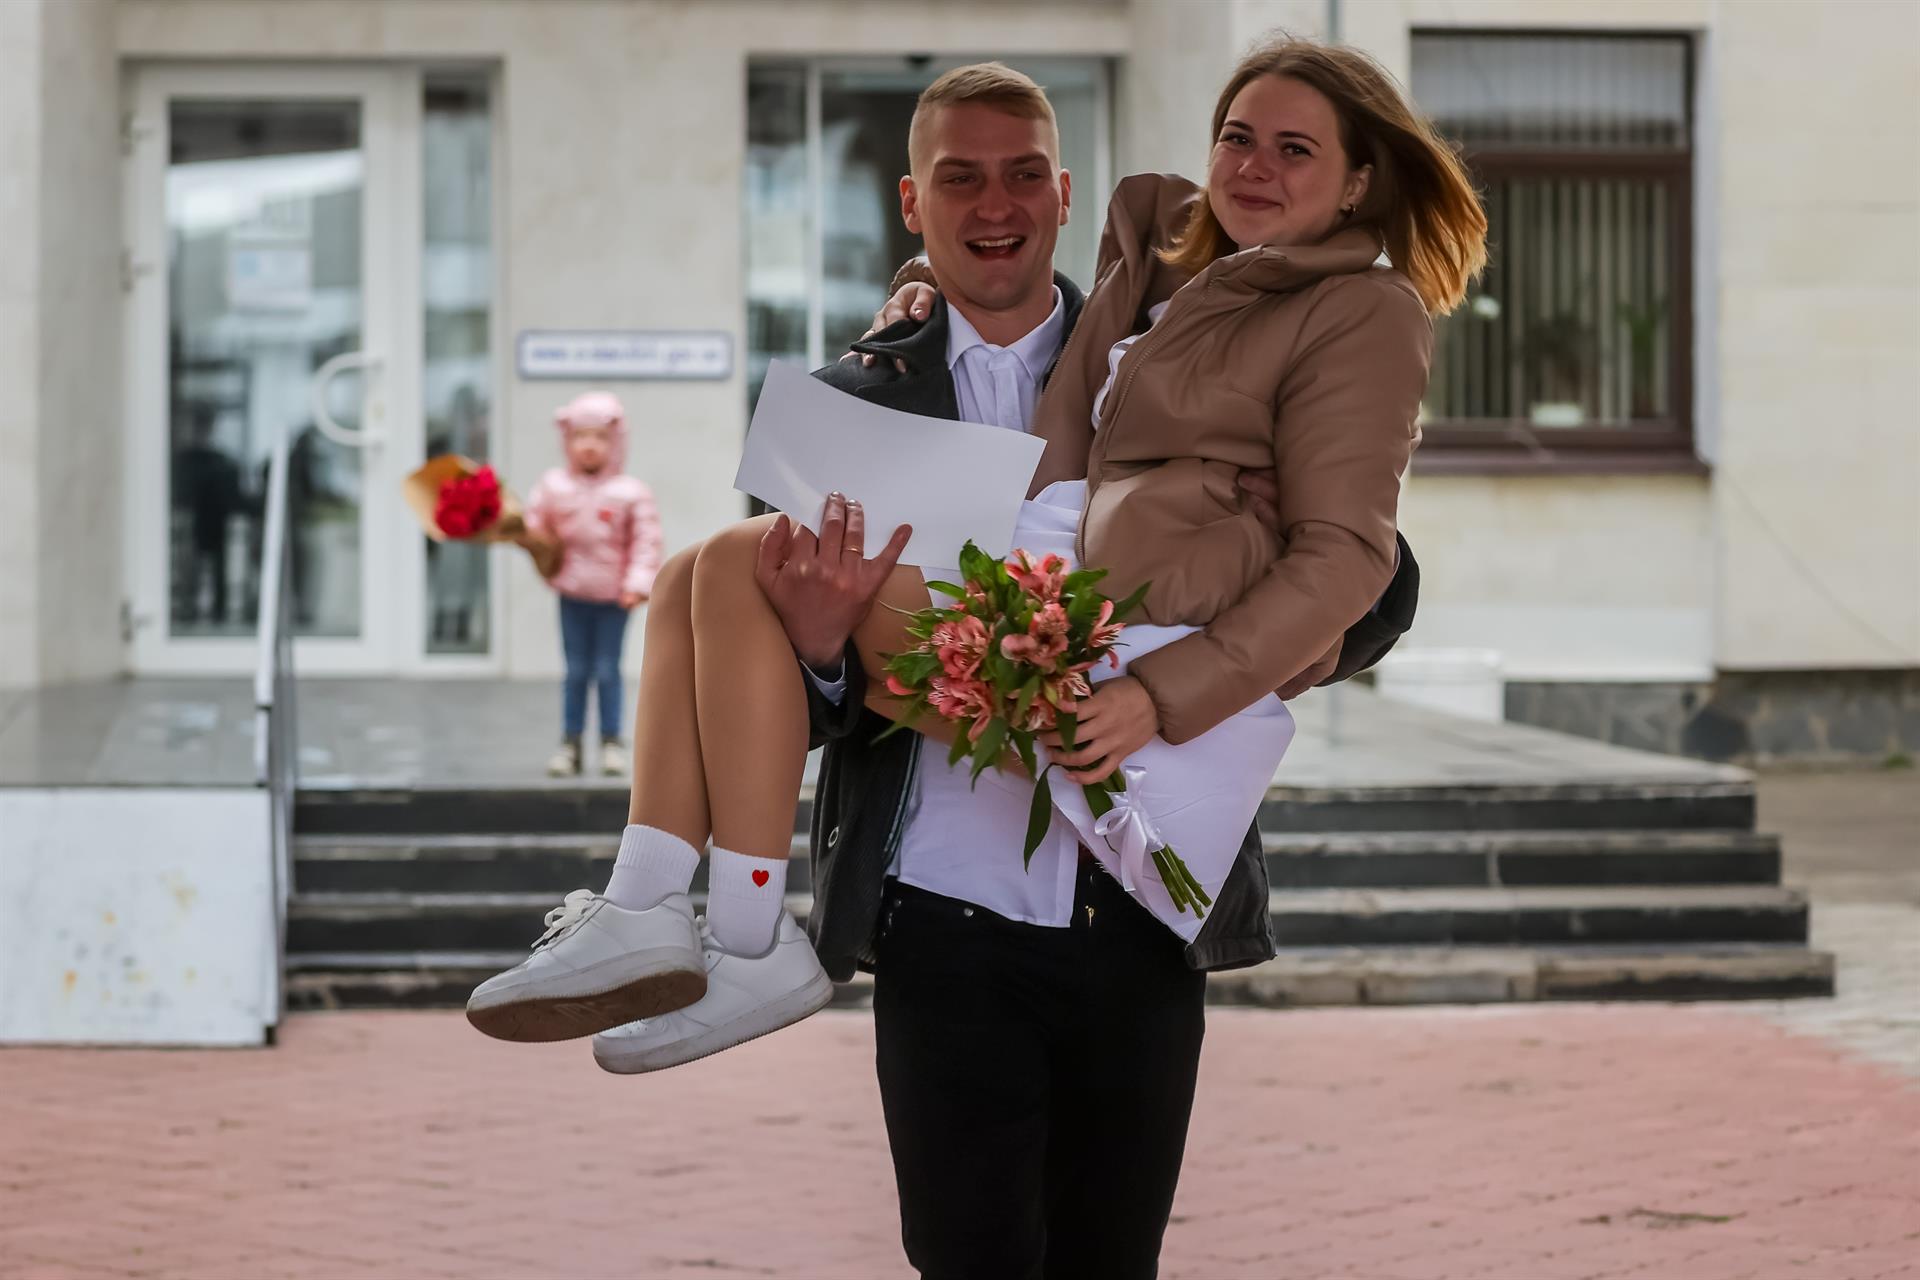 Una boda y un poco de alegría en medio de la guerra en Ucrania (Fotos)